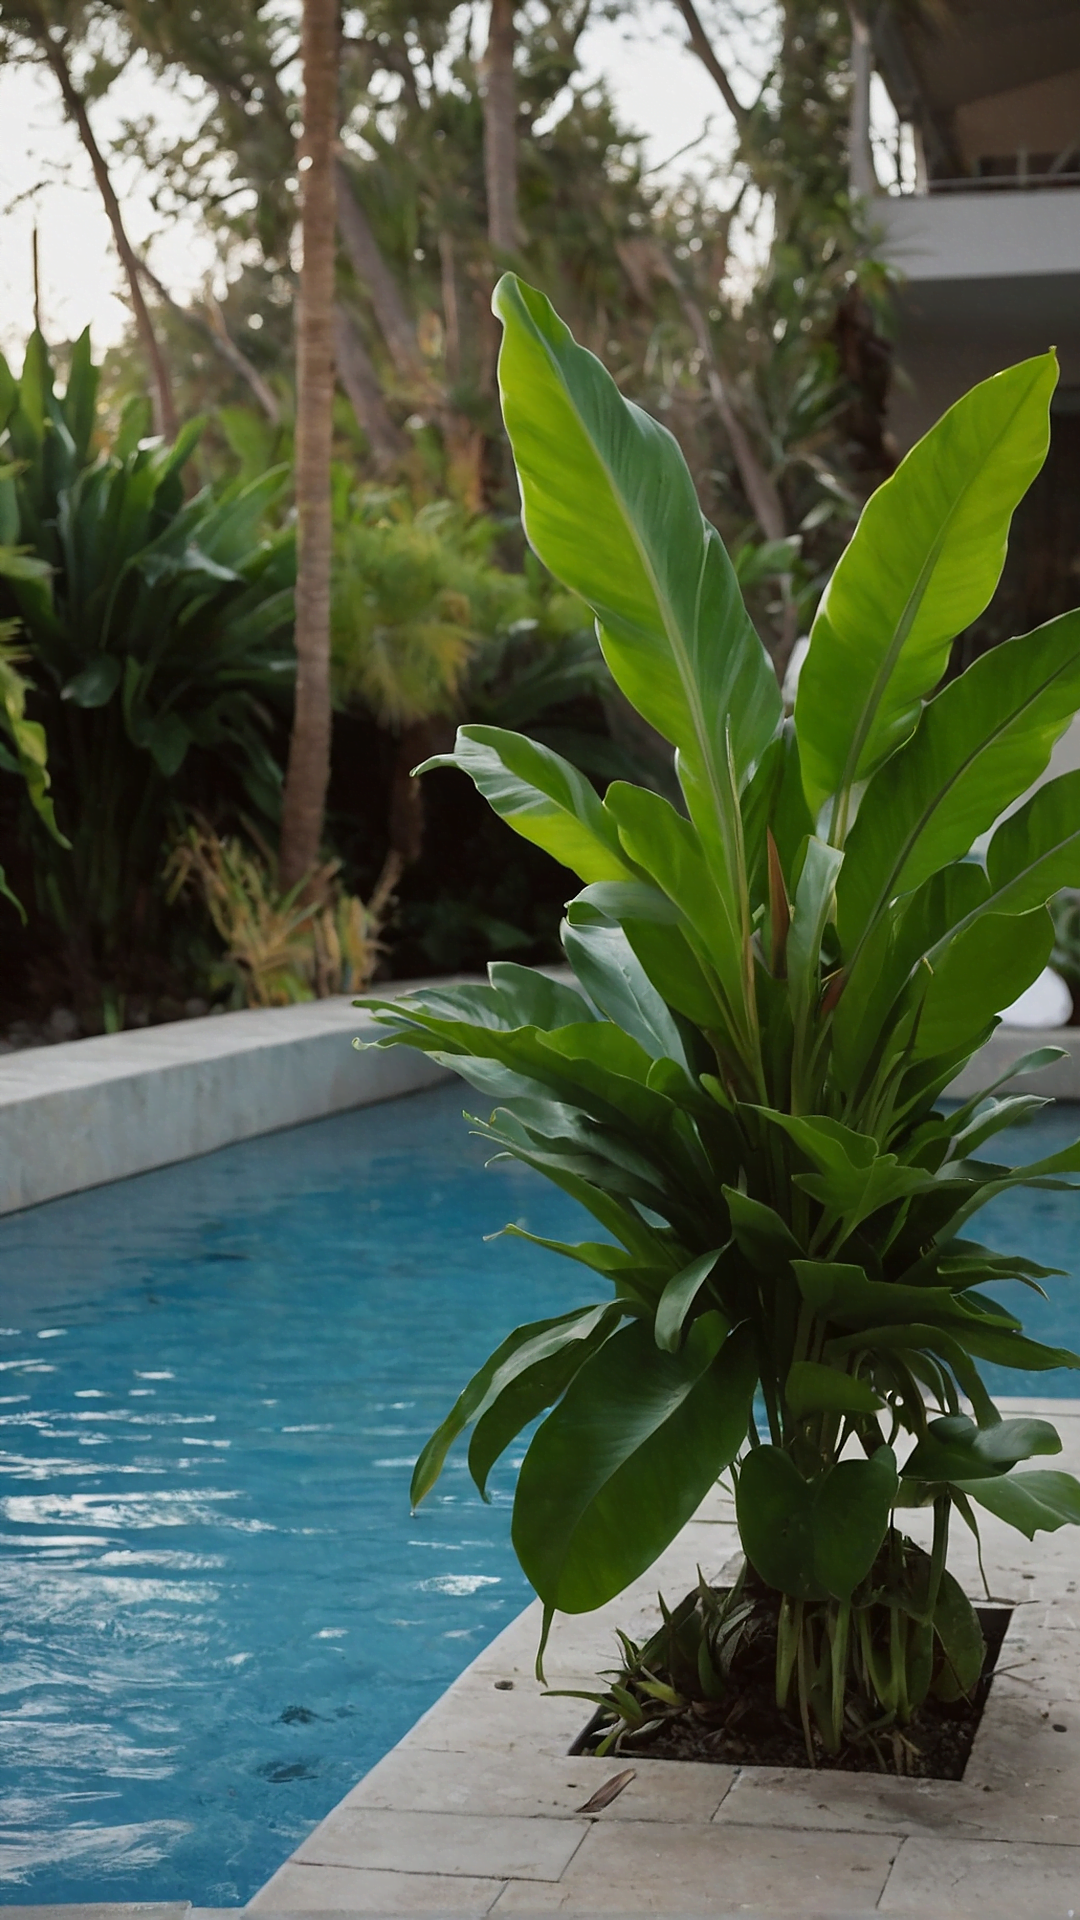 Subtle Elegance: Minimalistic Plants for Poolside Areas